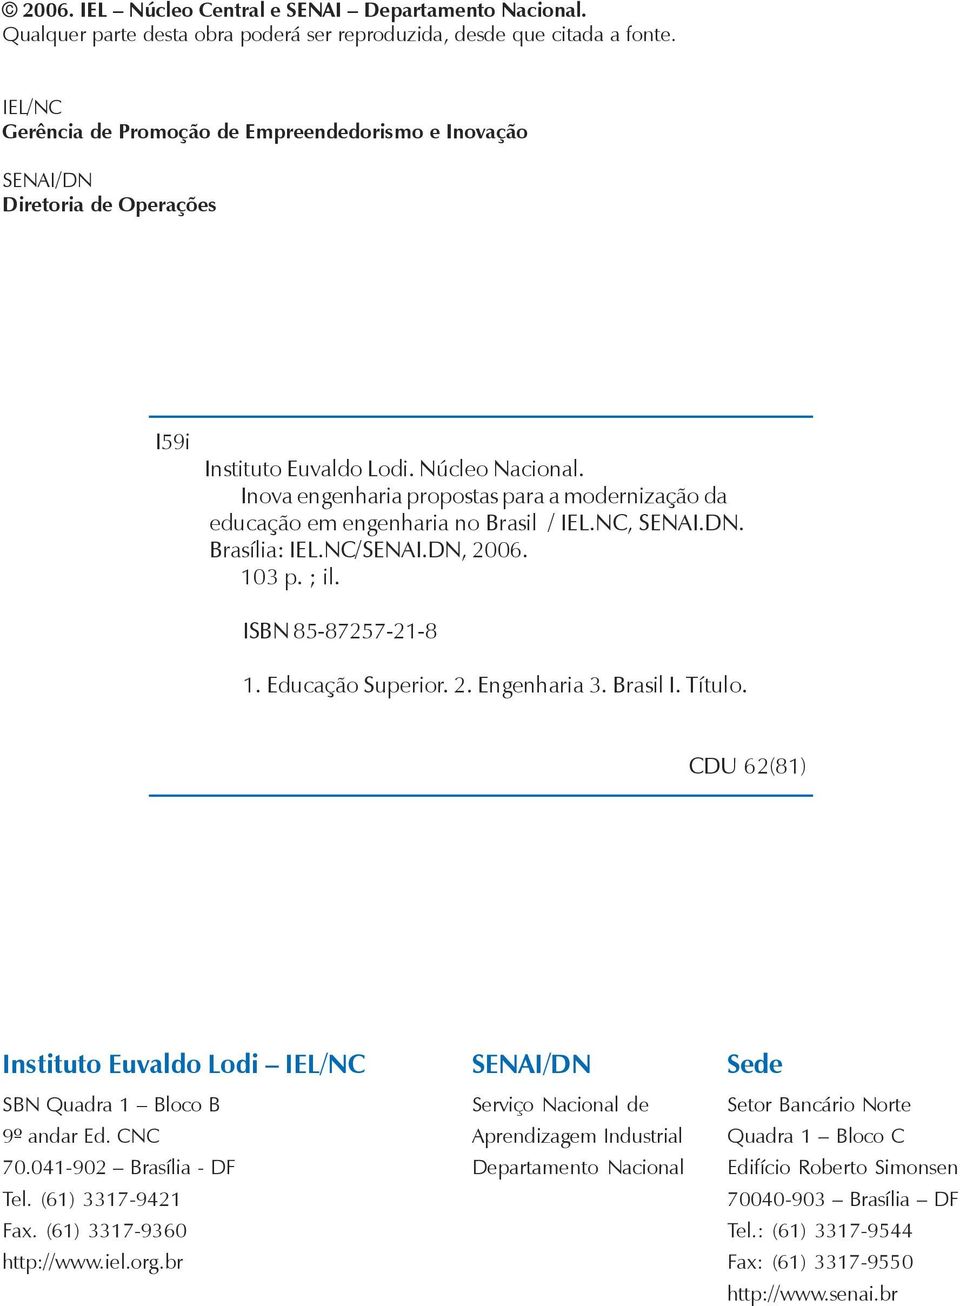 Inova engenharia propostas para a modernização da educação em engenharia no Brasil / IEL.NC, SENAI.DN. Brasília: IEL.NC/SENAI.DN, 2006. 103 p. ; il. ISBN 85-87257-21-8 1. Educação Superior. 2. Engenharia 3.